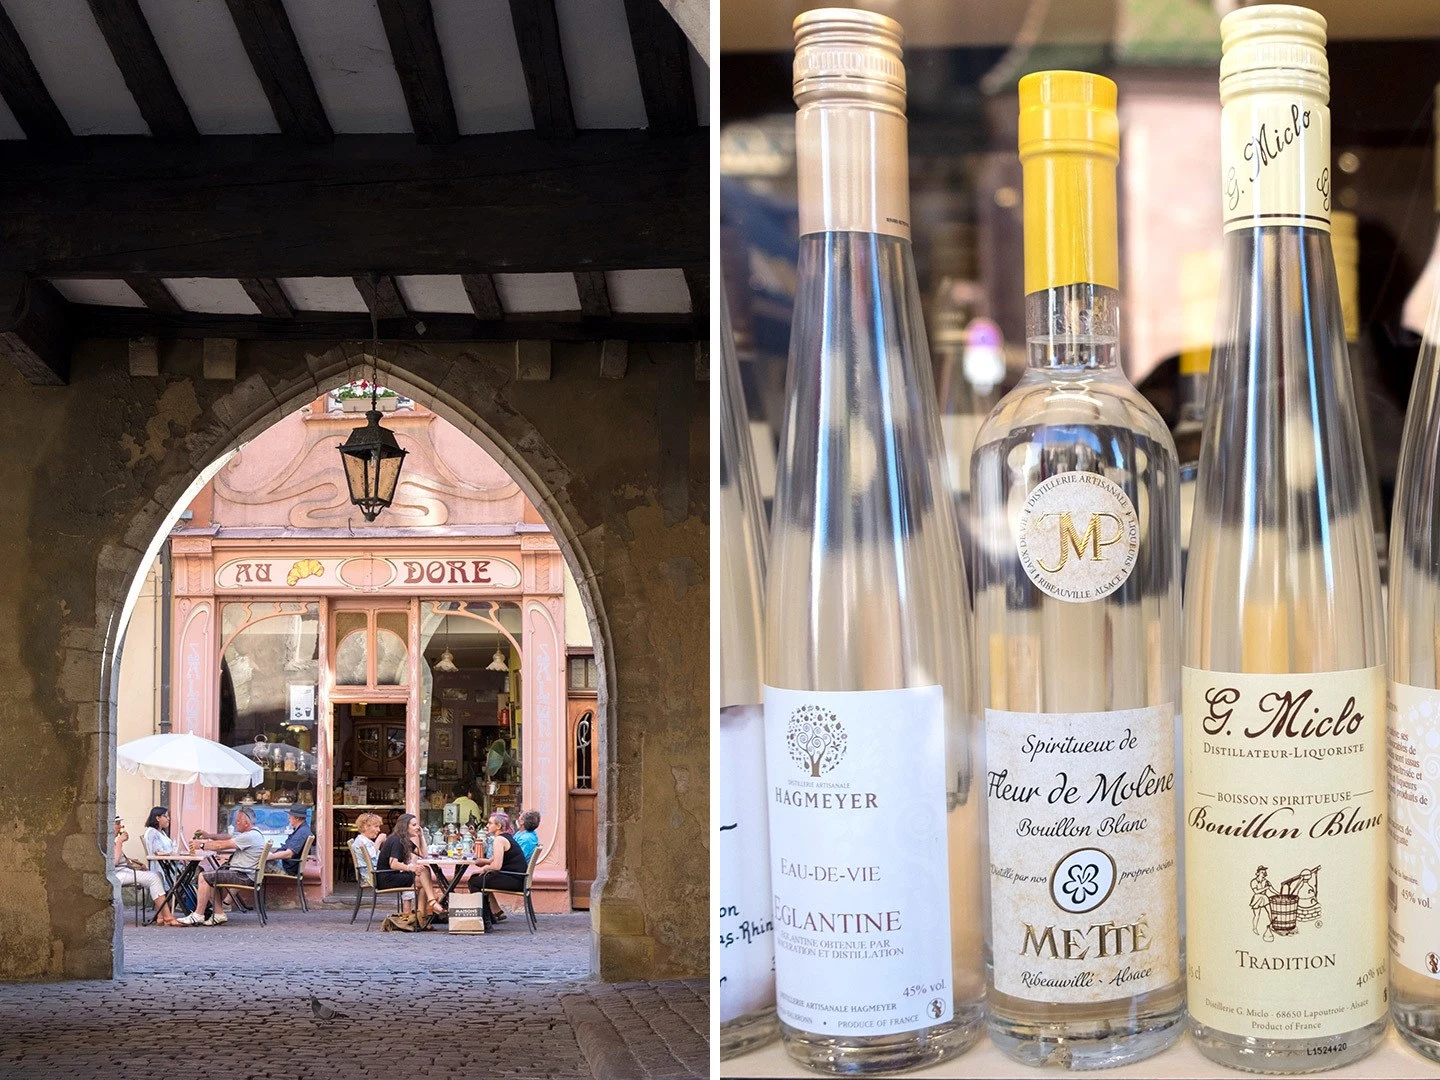 Café culture and Alsace wine